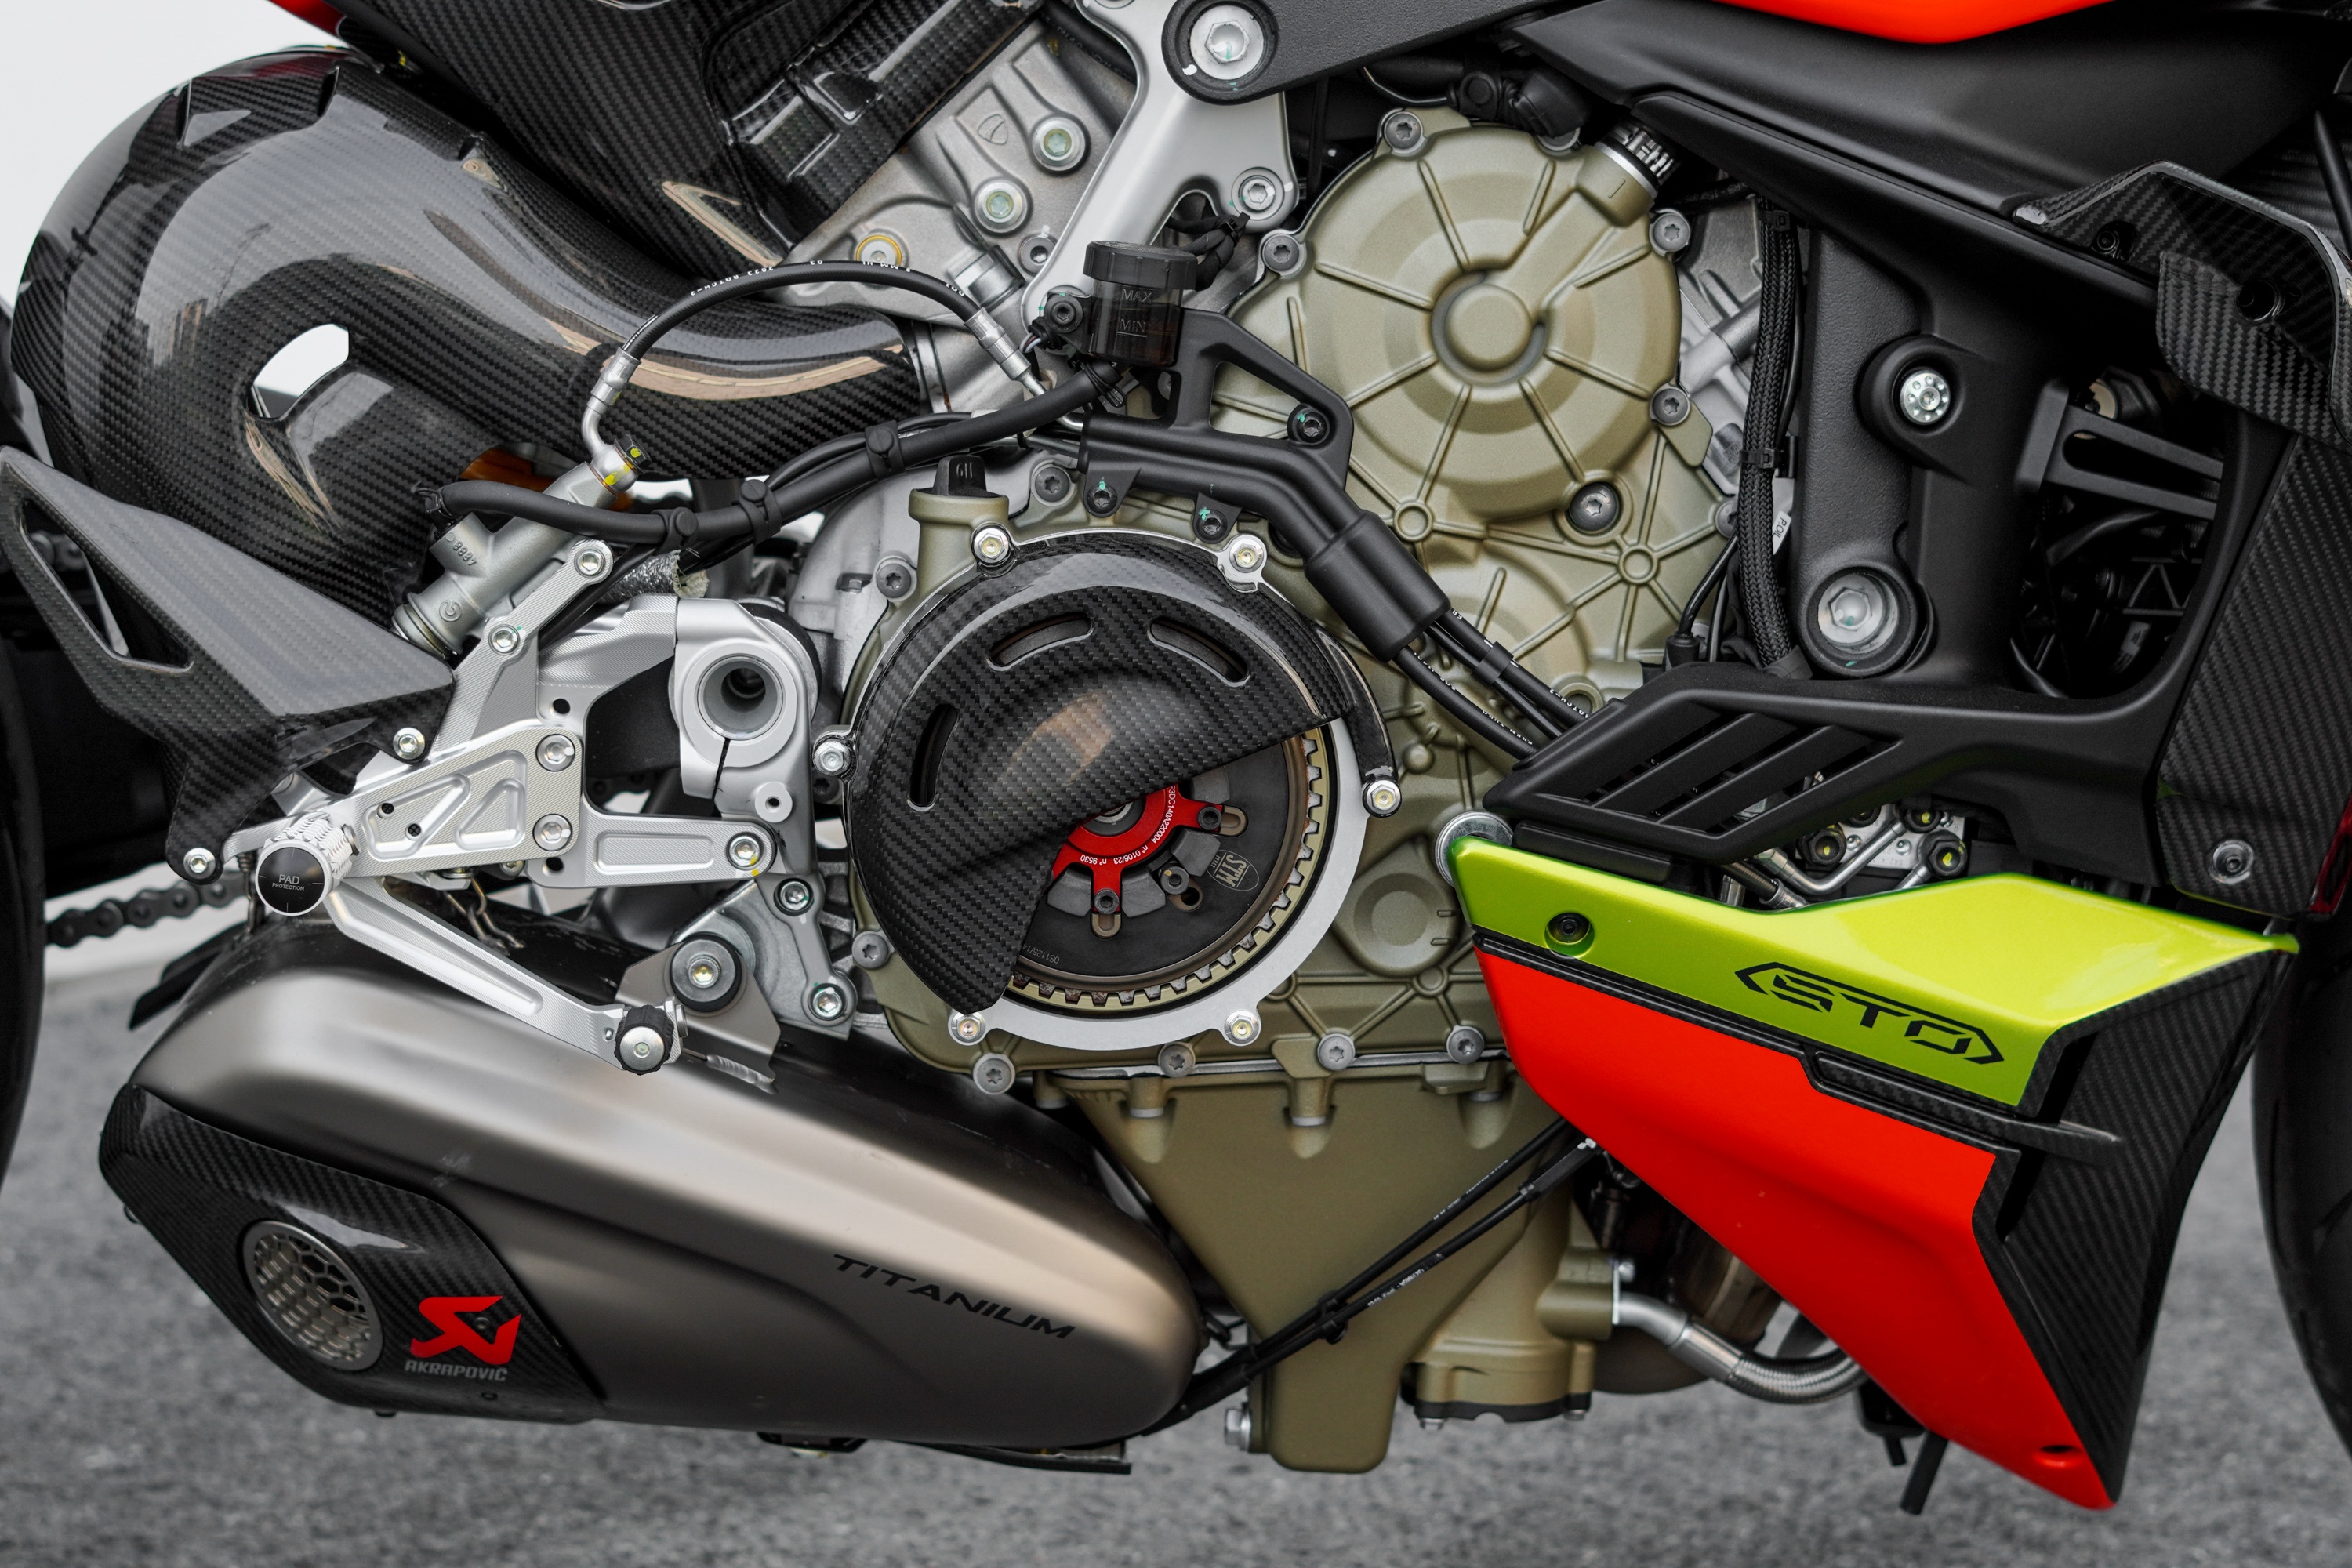 Ducati Streetfighter V4 bản giới hạn về Việt Nam, giá hơn 2 tỷ đồng - ảnh 9